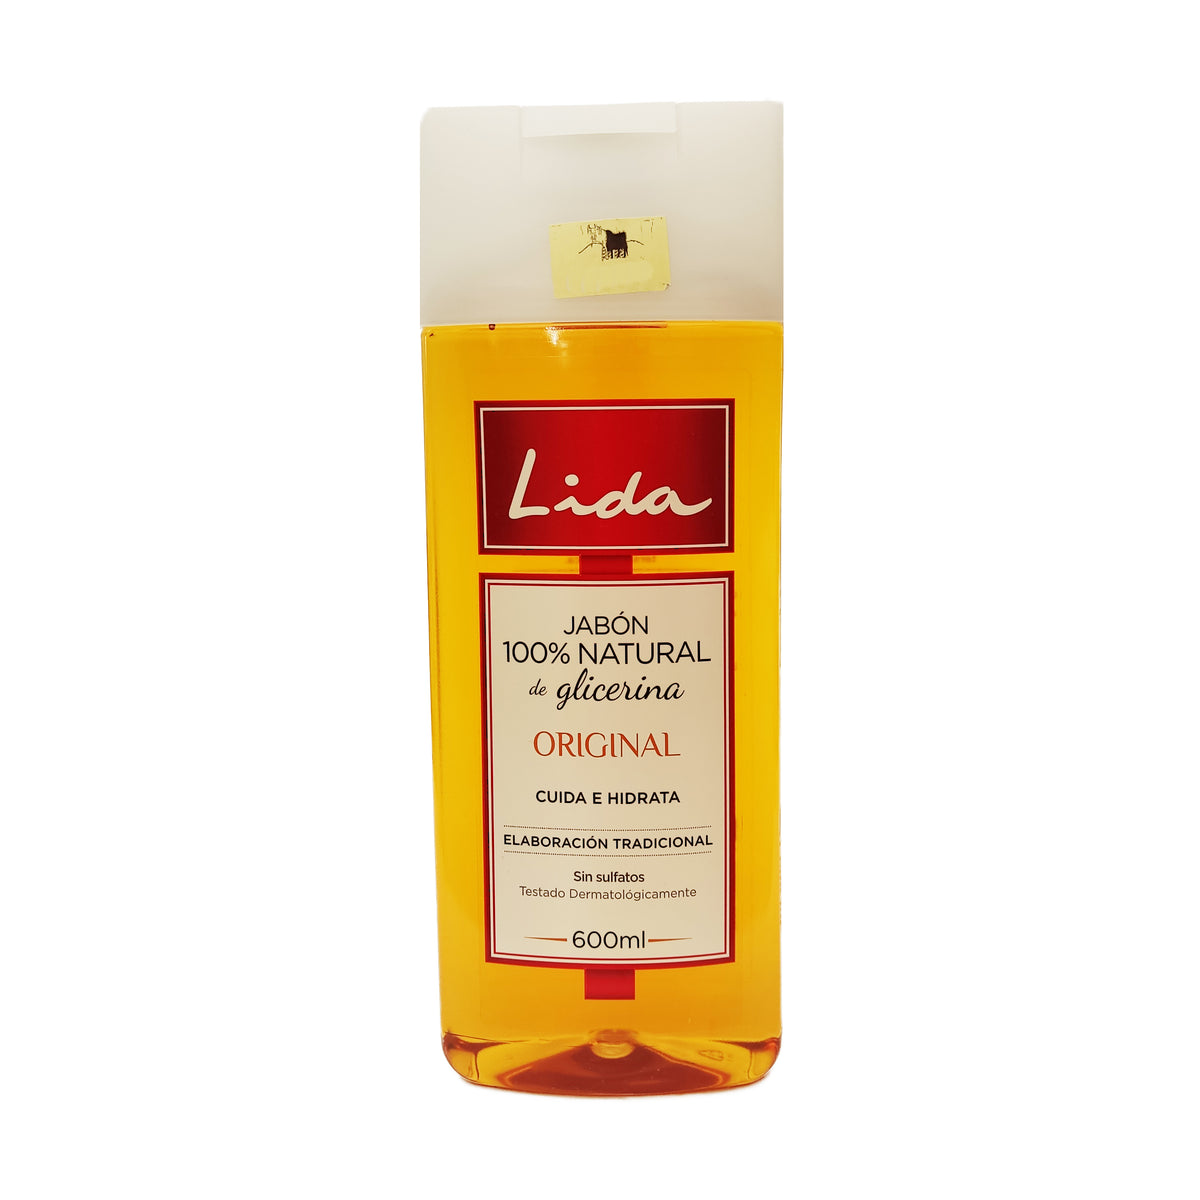 Comprar Jabon liquido glicerina 100% n en Supermercados MAS Online